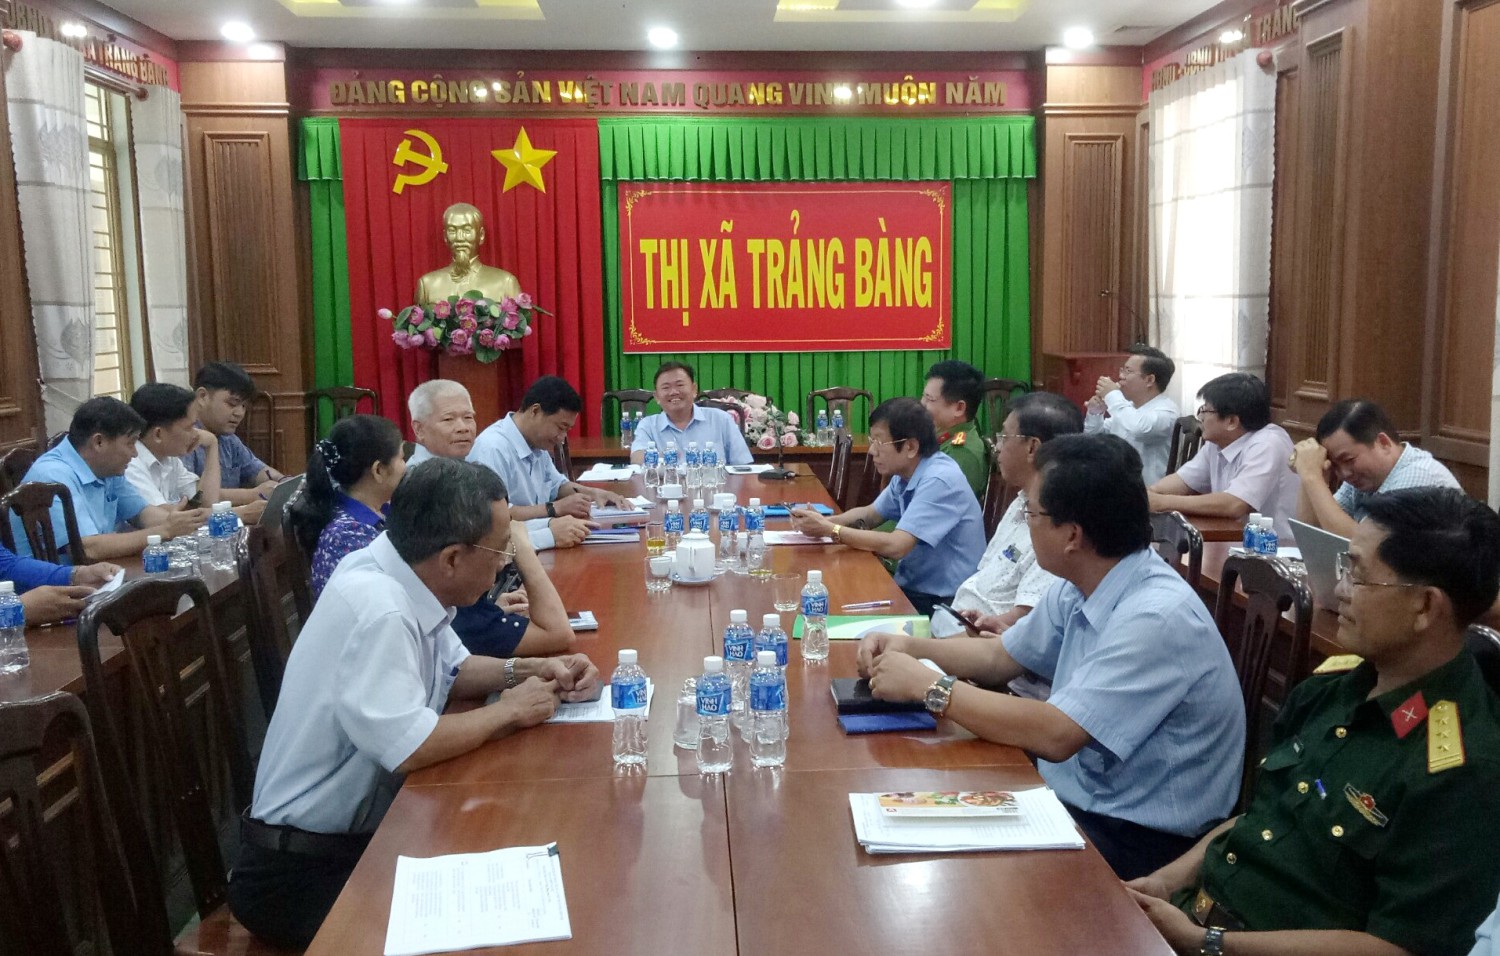 Tham dự buổi làm việc, có ông Hà Minh Dảo- Phó Chủ tịch UBND thị xã.